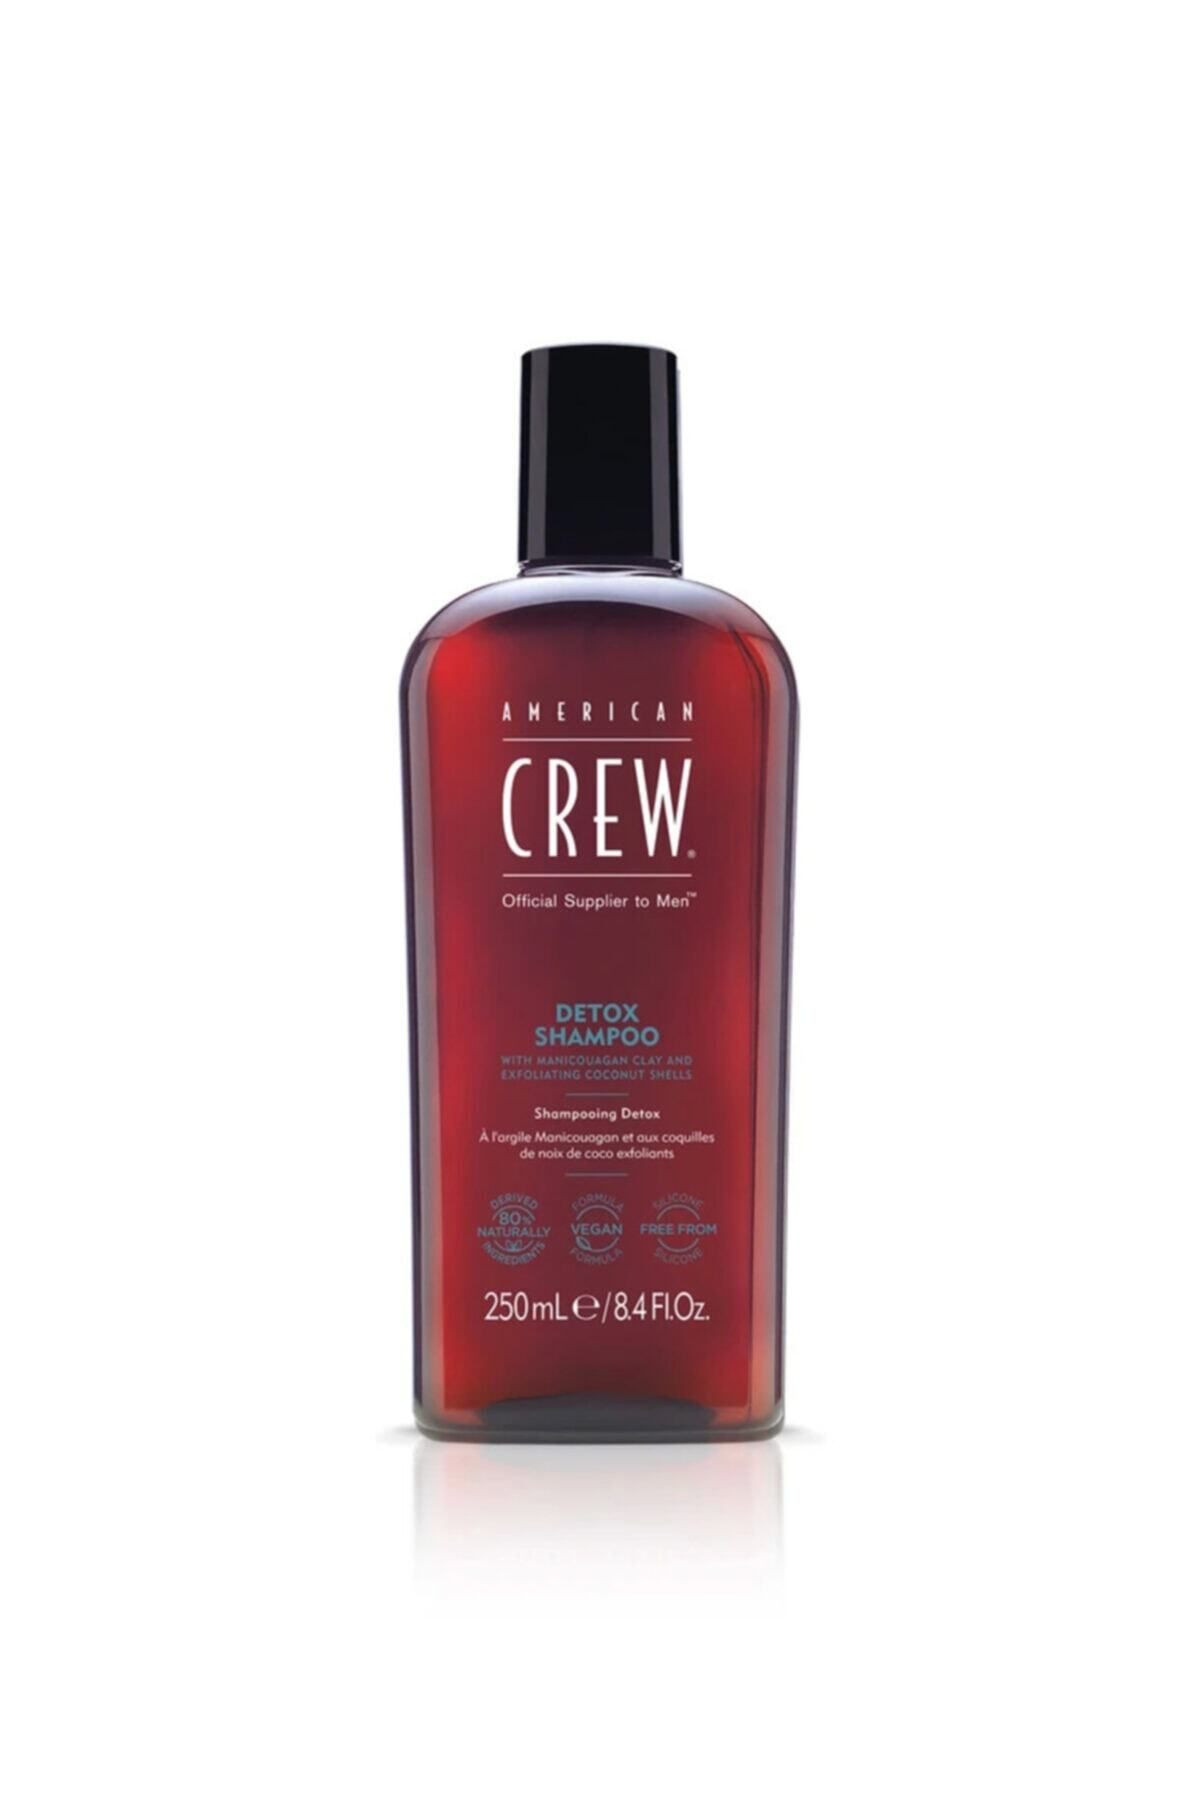 American Crew Erkeklere Özel Detox Şampuanı 250ml